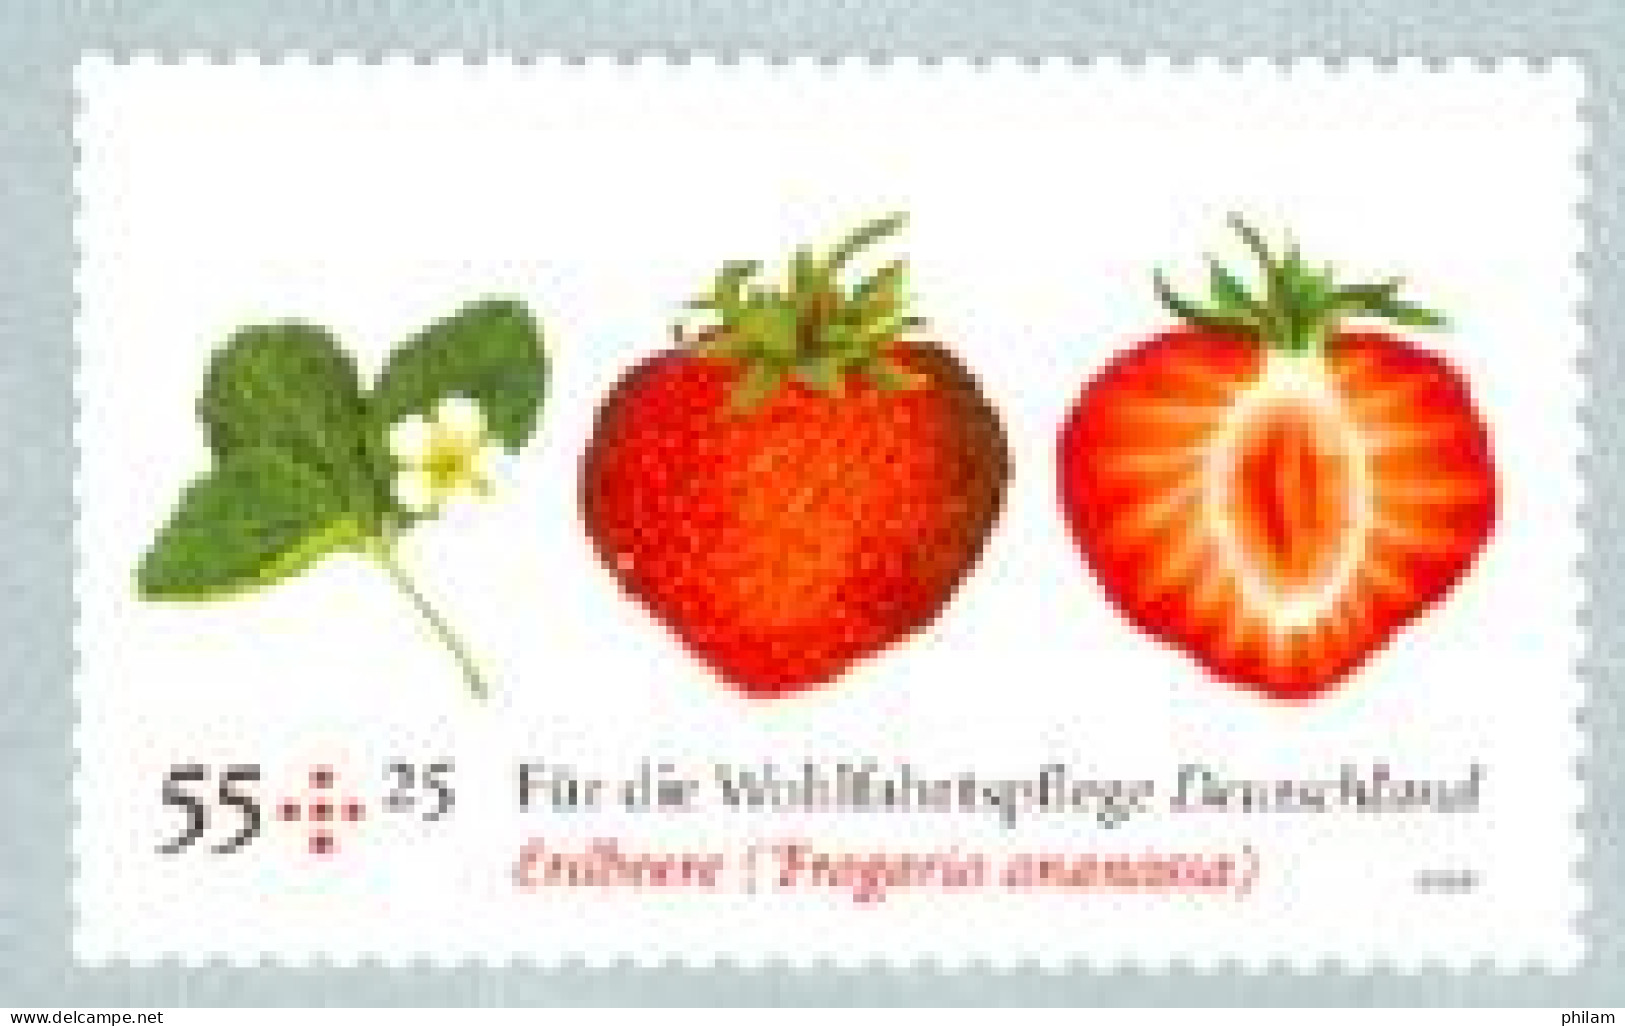 ALLEMAGNE  - 2010 - Bienfaisance: Fruits - Fraises - 1 V. Adhésif De Roulette - Unused Stamps